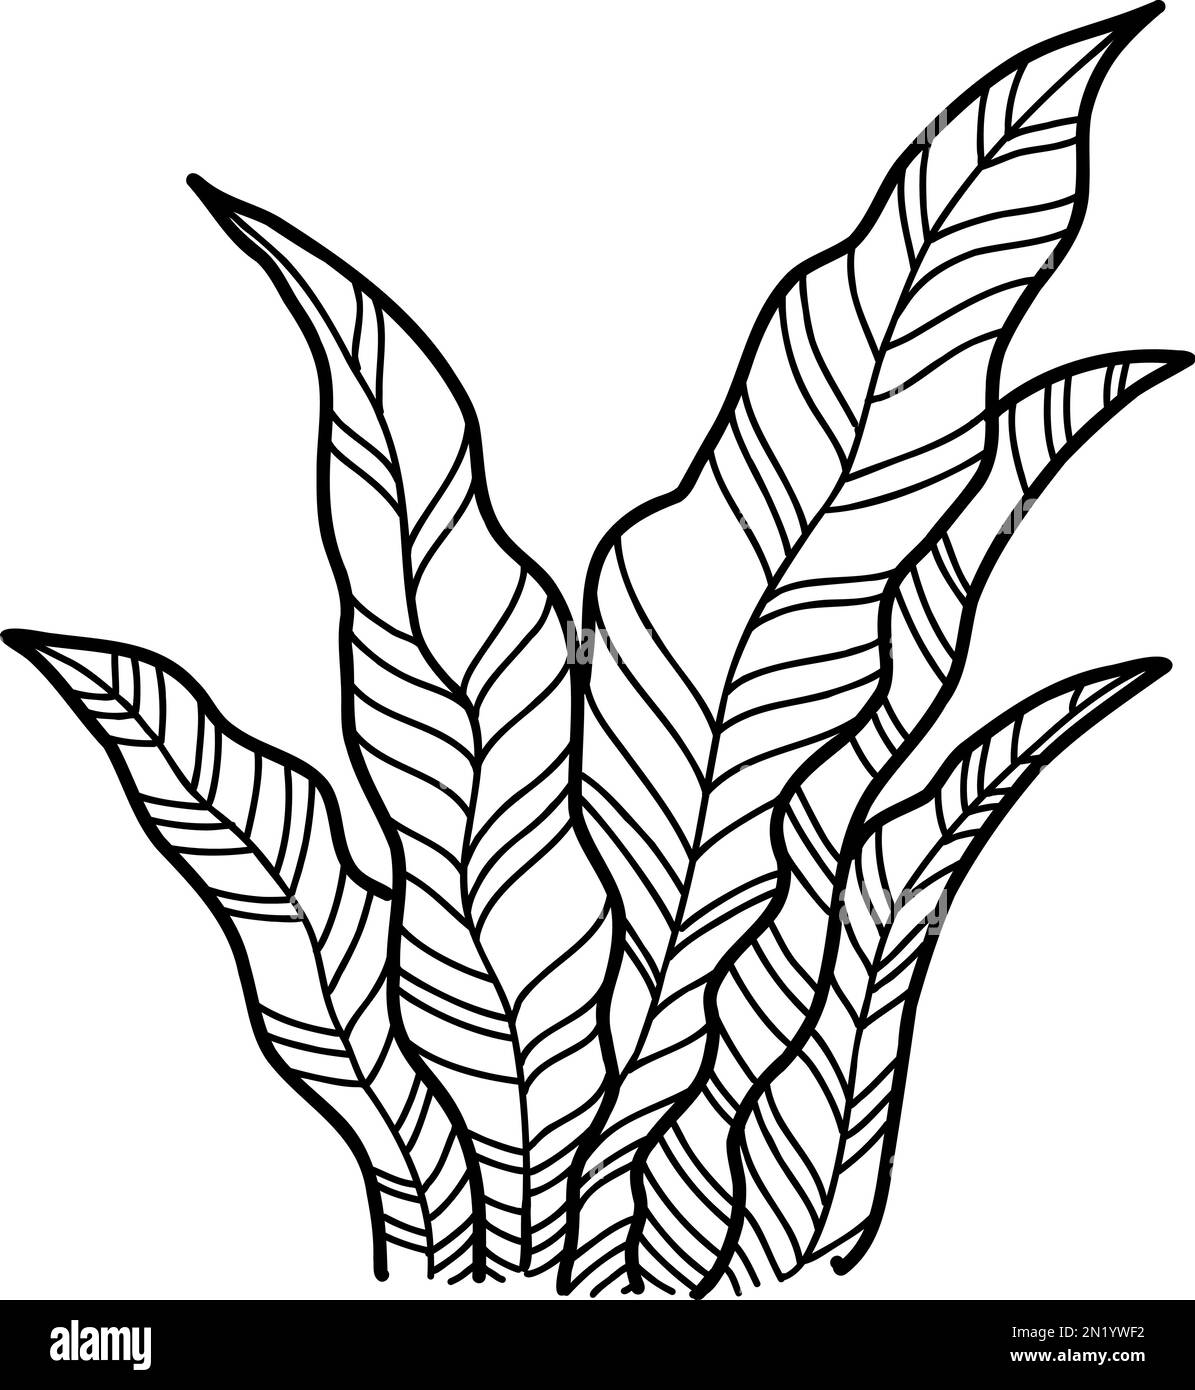 Pflanzen Sie die Symbolkontur des Waldes, handgezeichnete Vektoren. Gartenzeichnung Stock Vektor